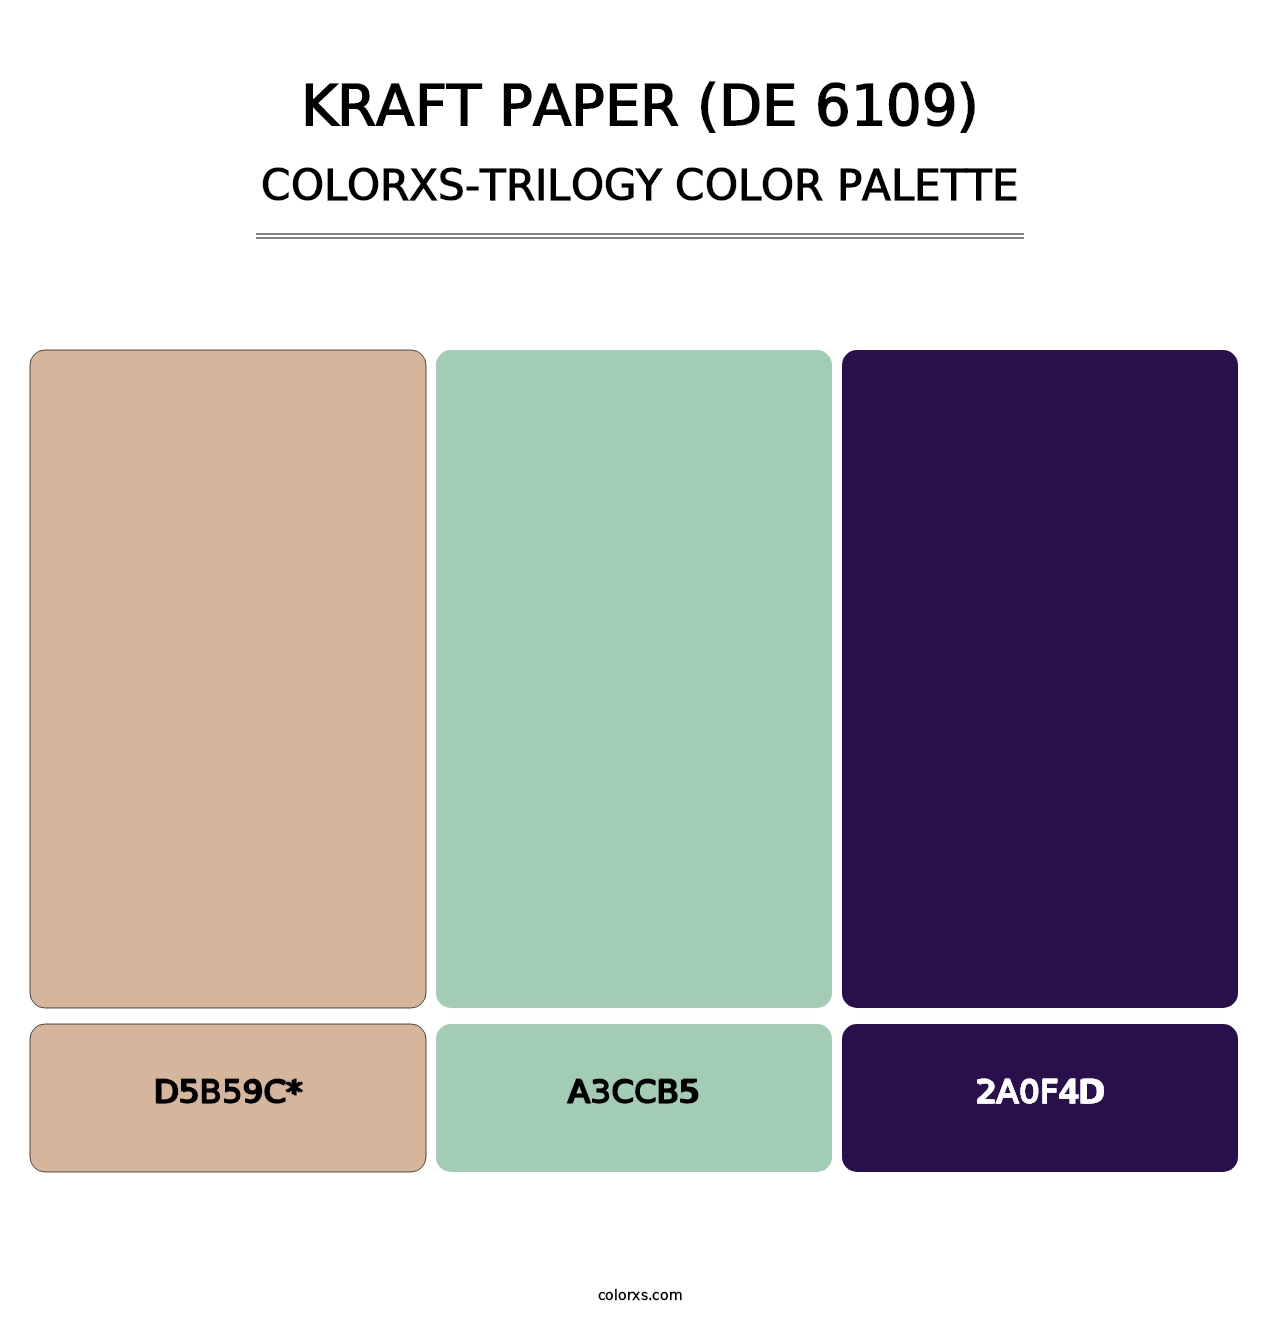 Kraft Paper (DE 6109) - Colorxs Trilogy Palette